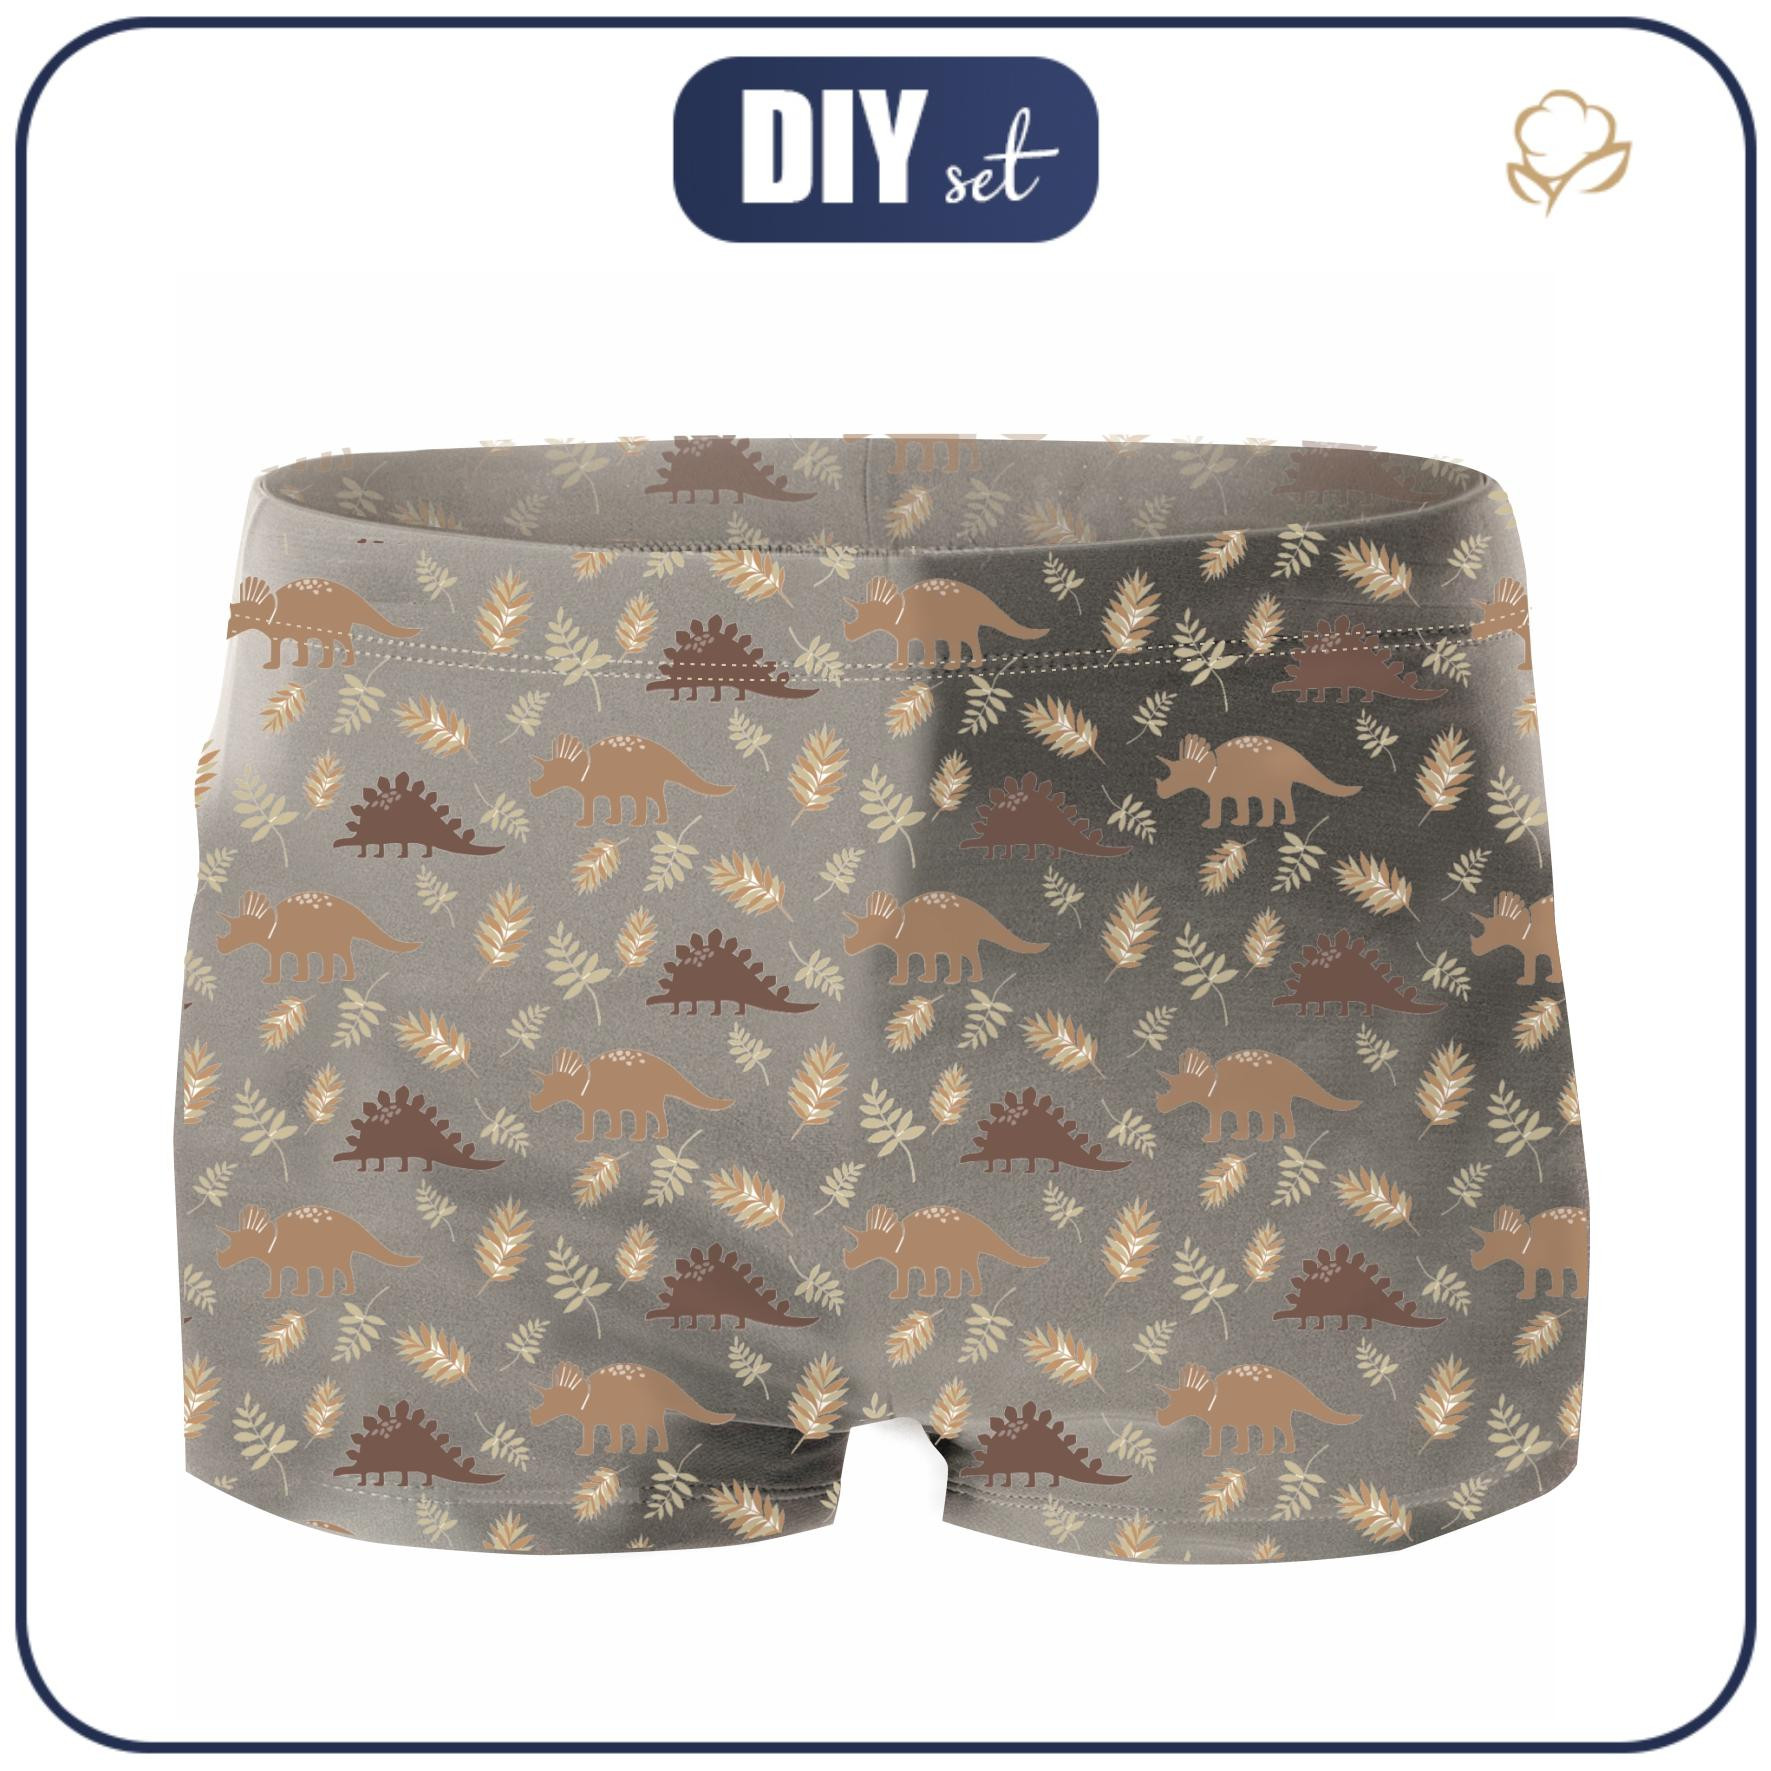 Boy's swim trunks - BROWN DINOSAURS PAT. 4  - sewing set